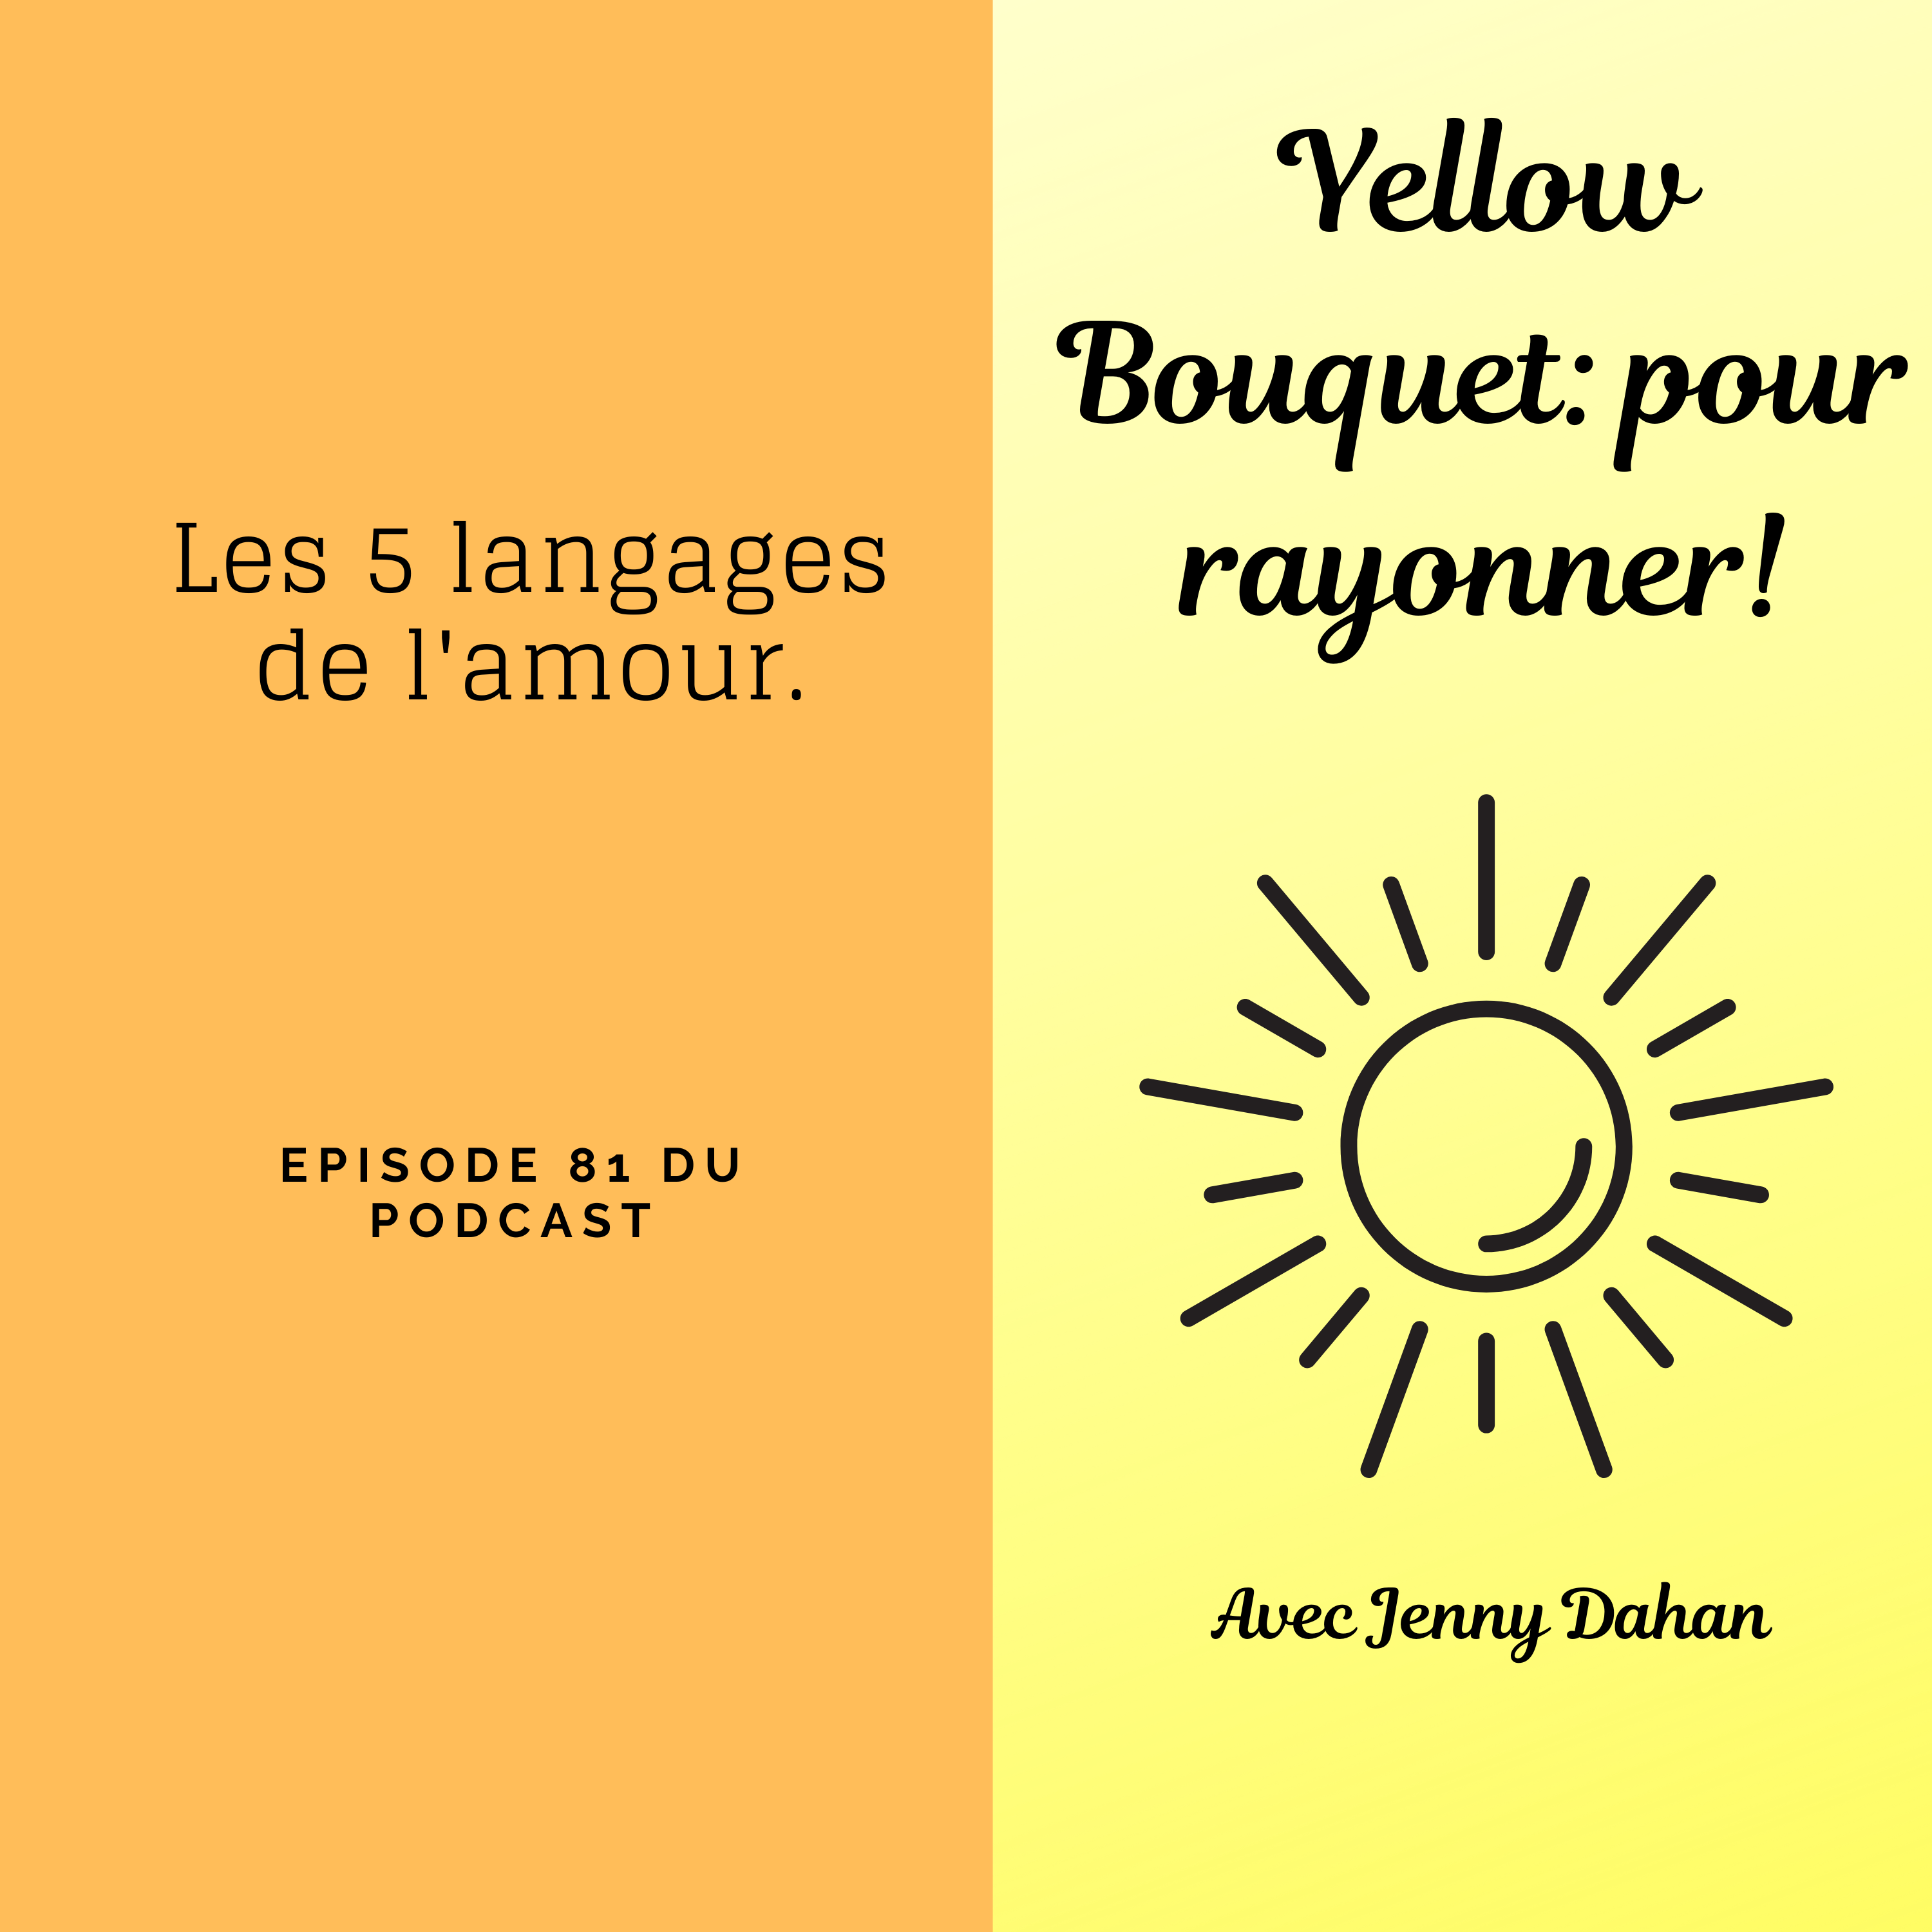 Yellow Bouquet: pour rayonner! épisode 081